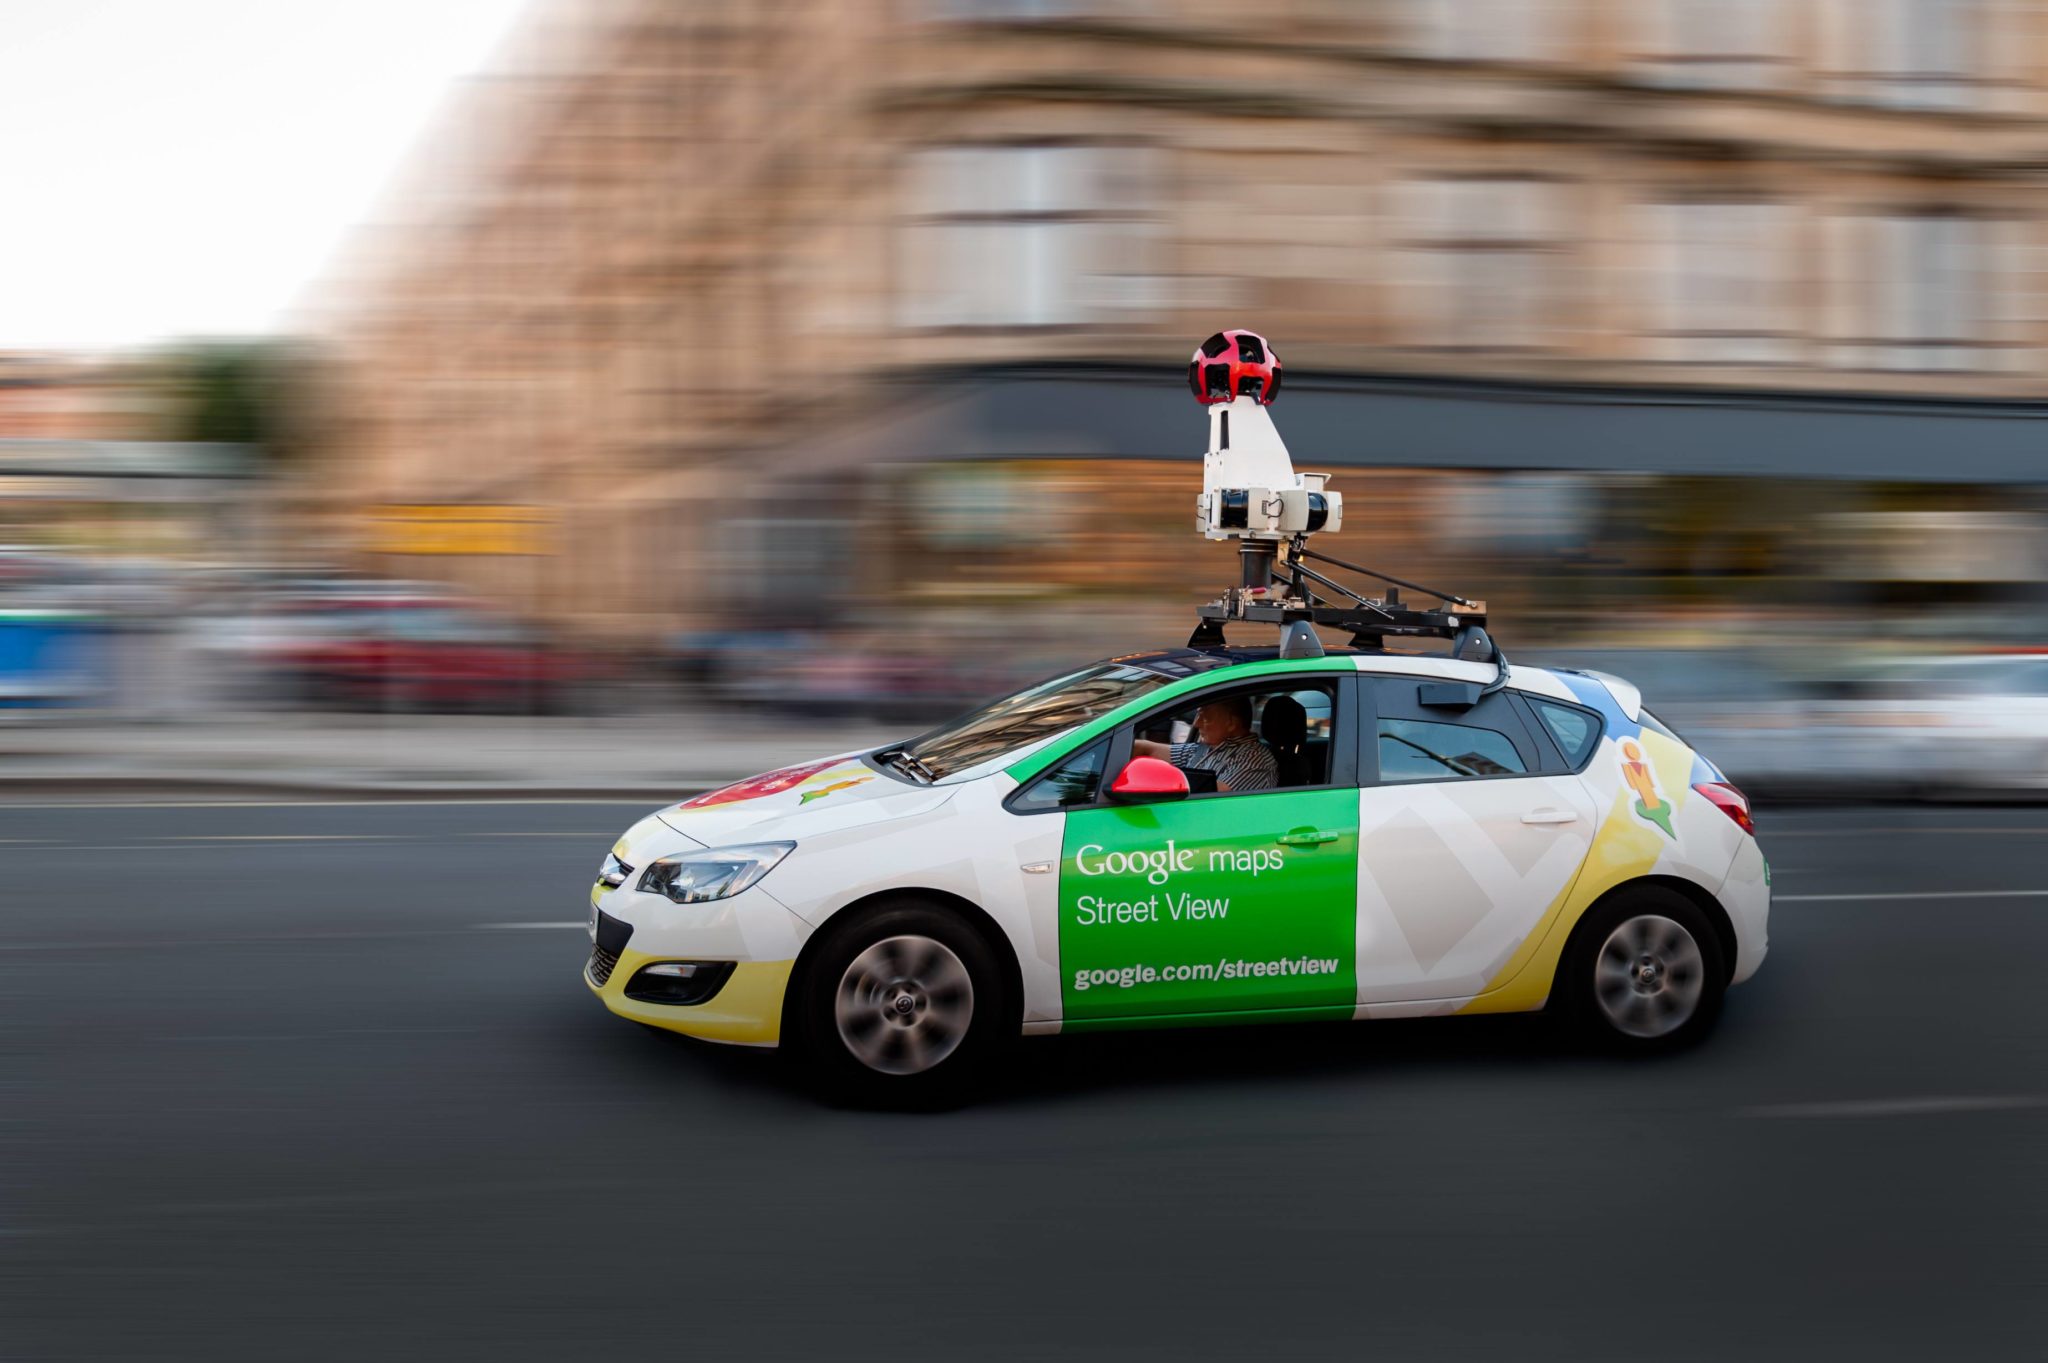 Google Mapy pre Android získali novú vrstvu pre zobrazenie Street View